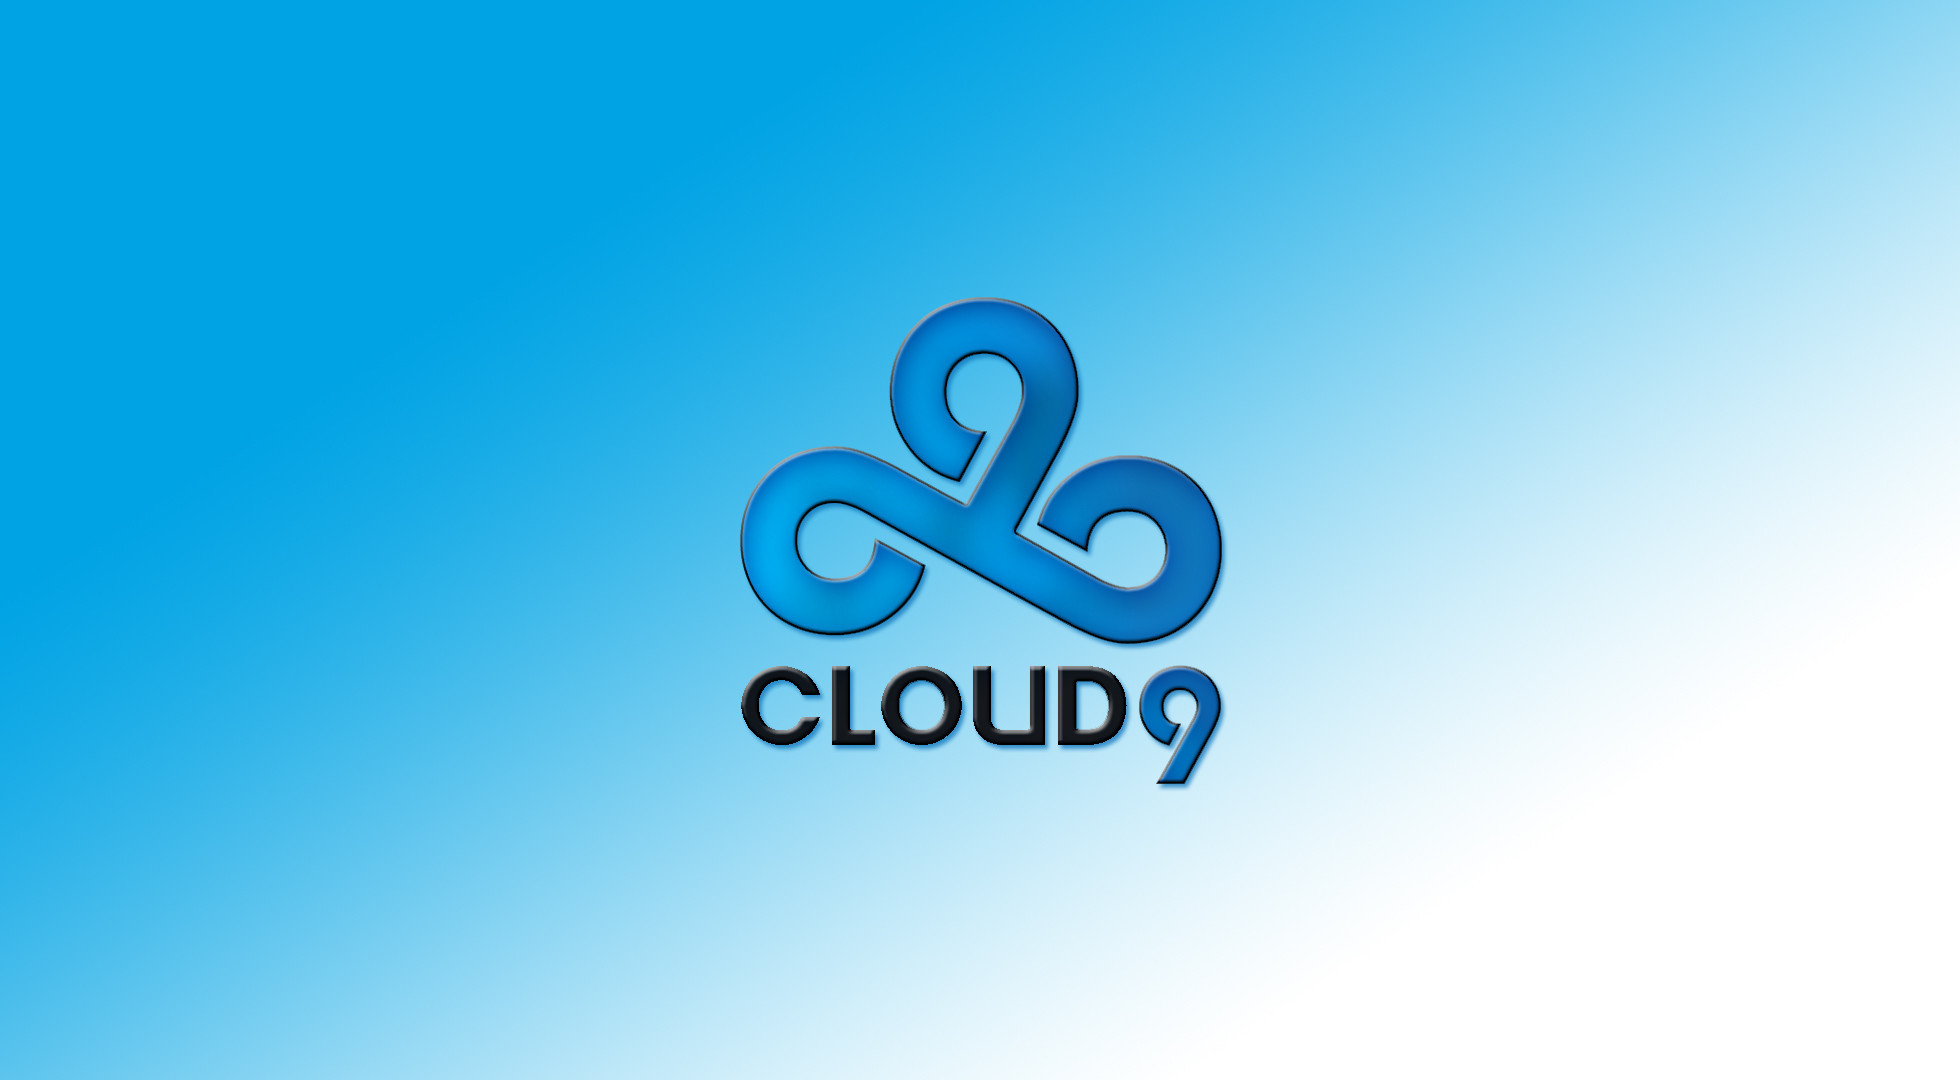 cloud 9 iphone wallpaper,blue,text,logo,font,azure